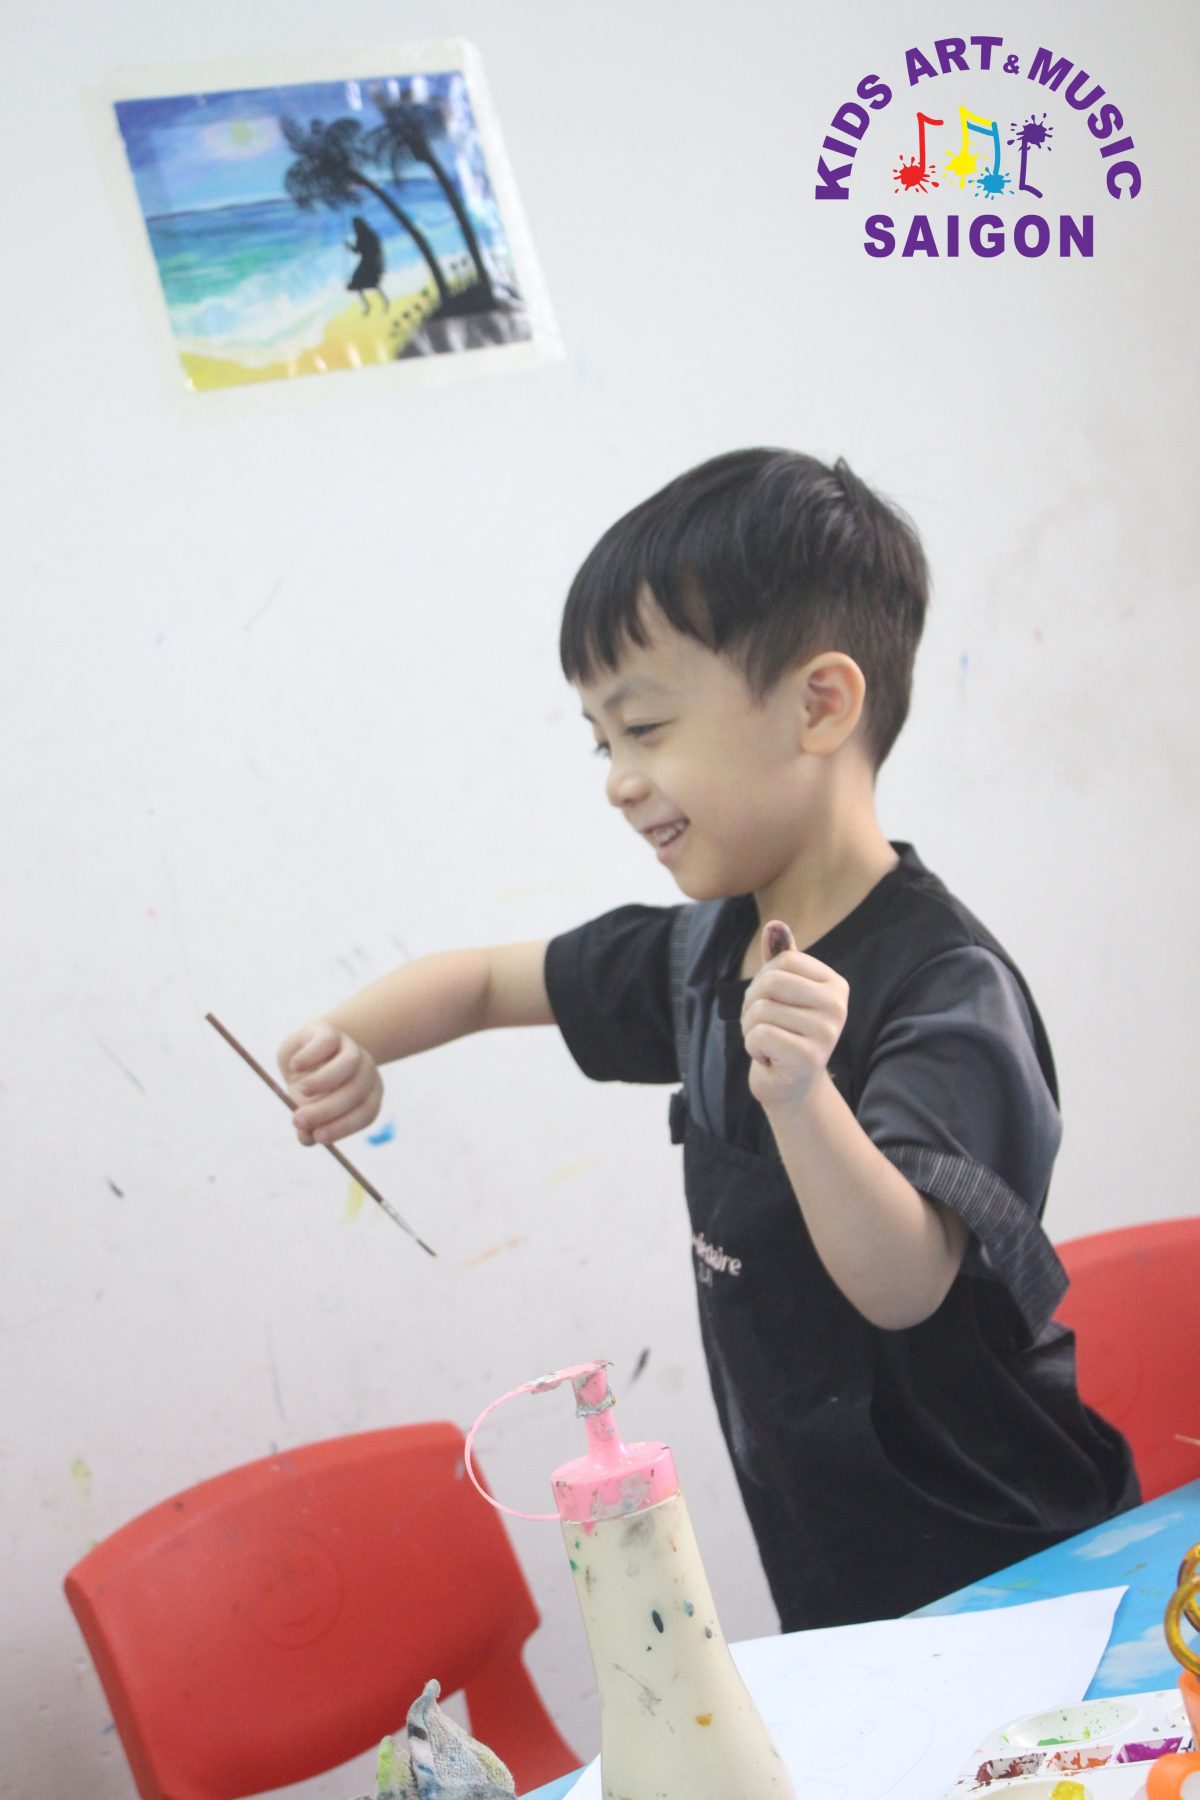 Lớp học vẽ tại Hải Phòng được tổ chức bởi Kids Art&Music Saigon, đội ngũ giáo viên giàu kinh nghiệm và nhiệt huyết luôn cam kết cung cấp chương trình học hiệu quả và mang lại trải nghiệm thăng hoa cho các bé. Các bài học được thiết kế khoa học, với sự kết hợp giữa phương pháp học tập và trò chơi, giúp cho các bé không những phát triển kỹ năng vẽ mà còn trau dồi kỹ năng tư duy phản biện. Hãy đến với Kids Art&Music Saigon và trải nghiệm lớp học vẽ đầy thú vị!